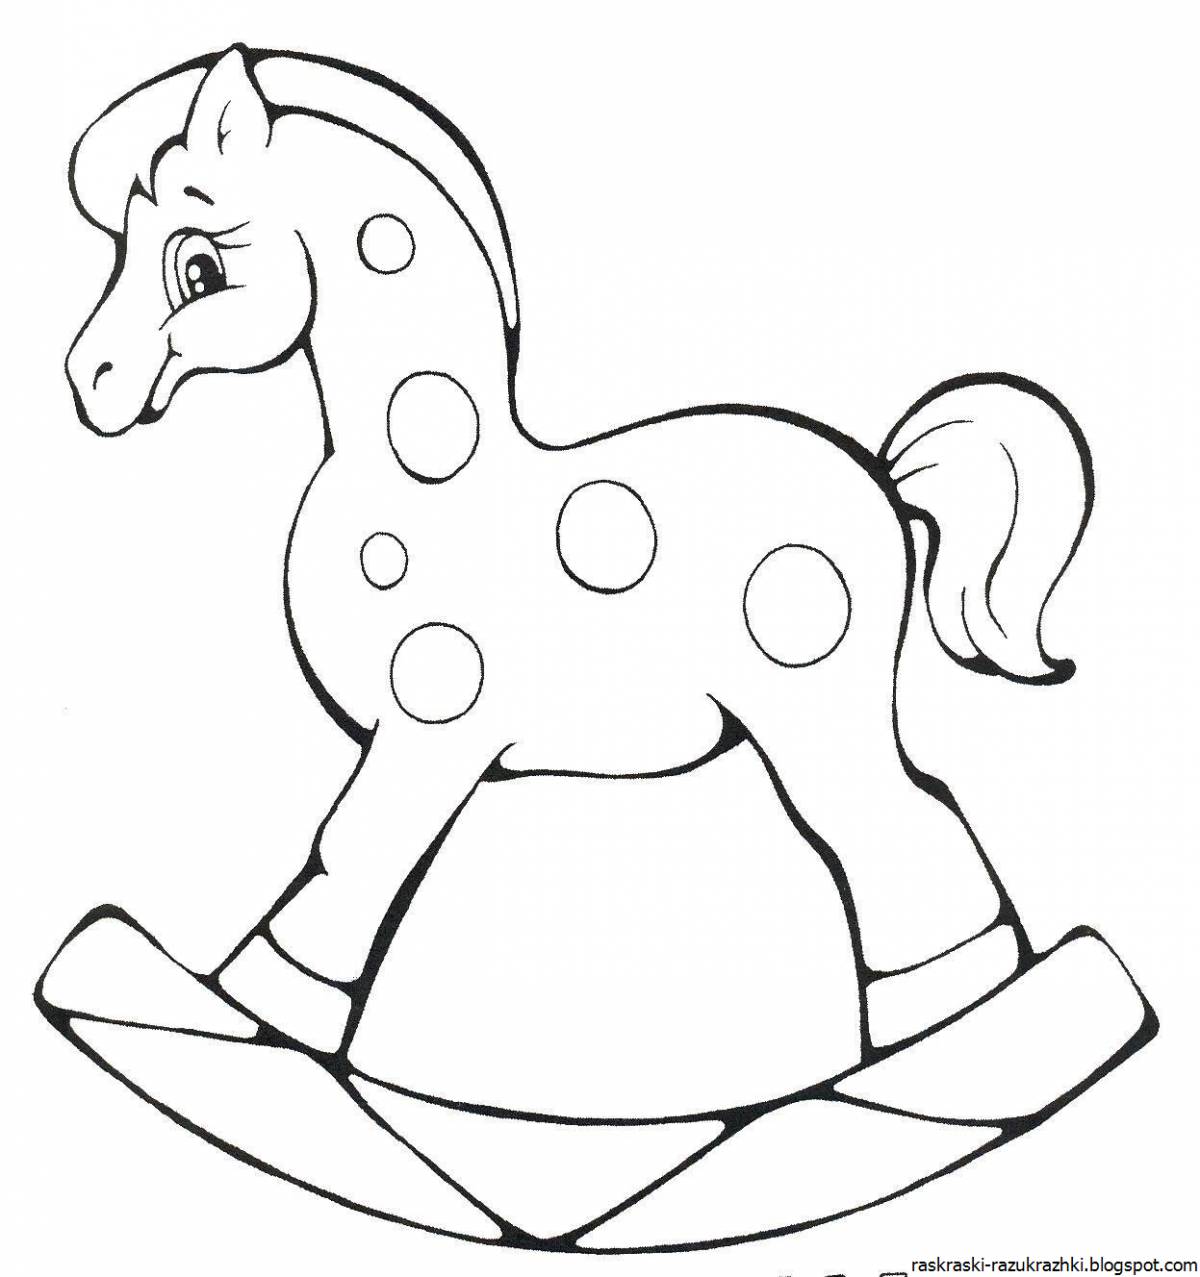 Изысканная раскраска лошади для детей 3-4 лет